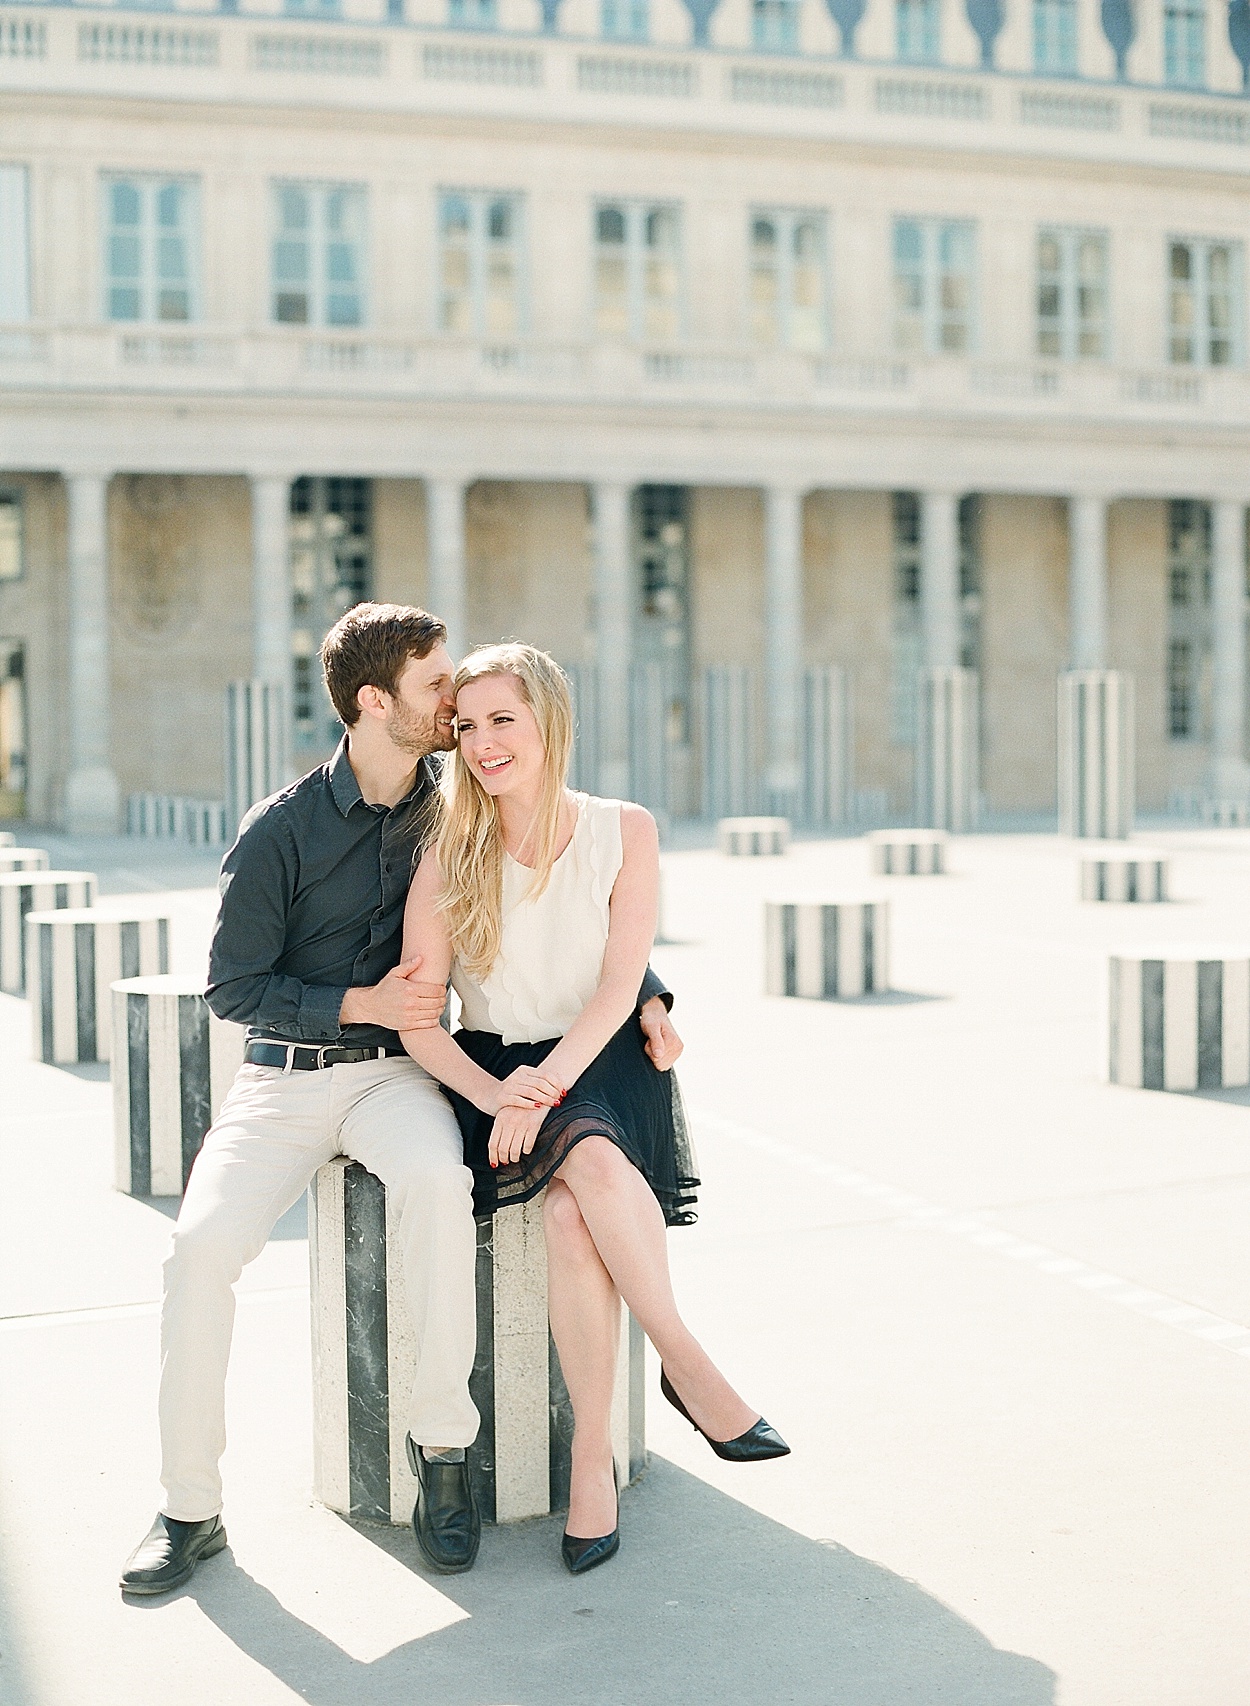 romantic Paris, France portraits at Palais-Royal | Abby Grace Photography